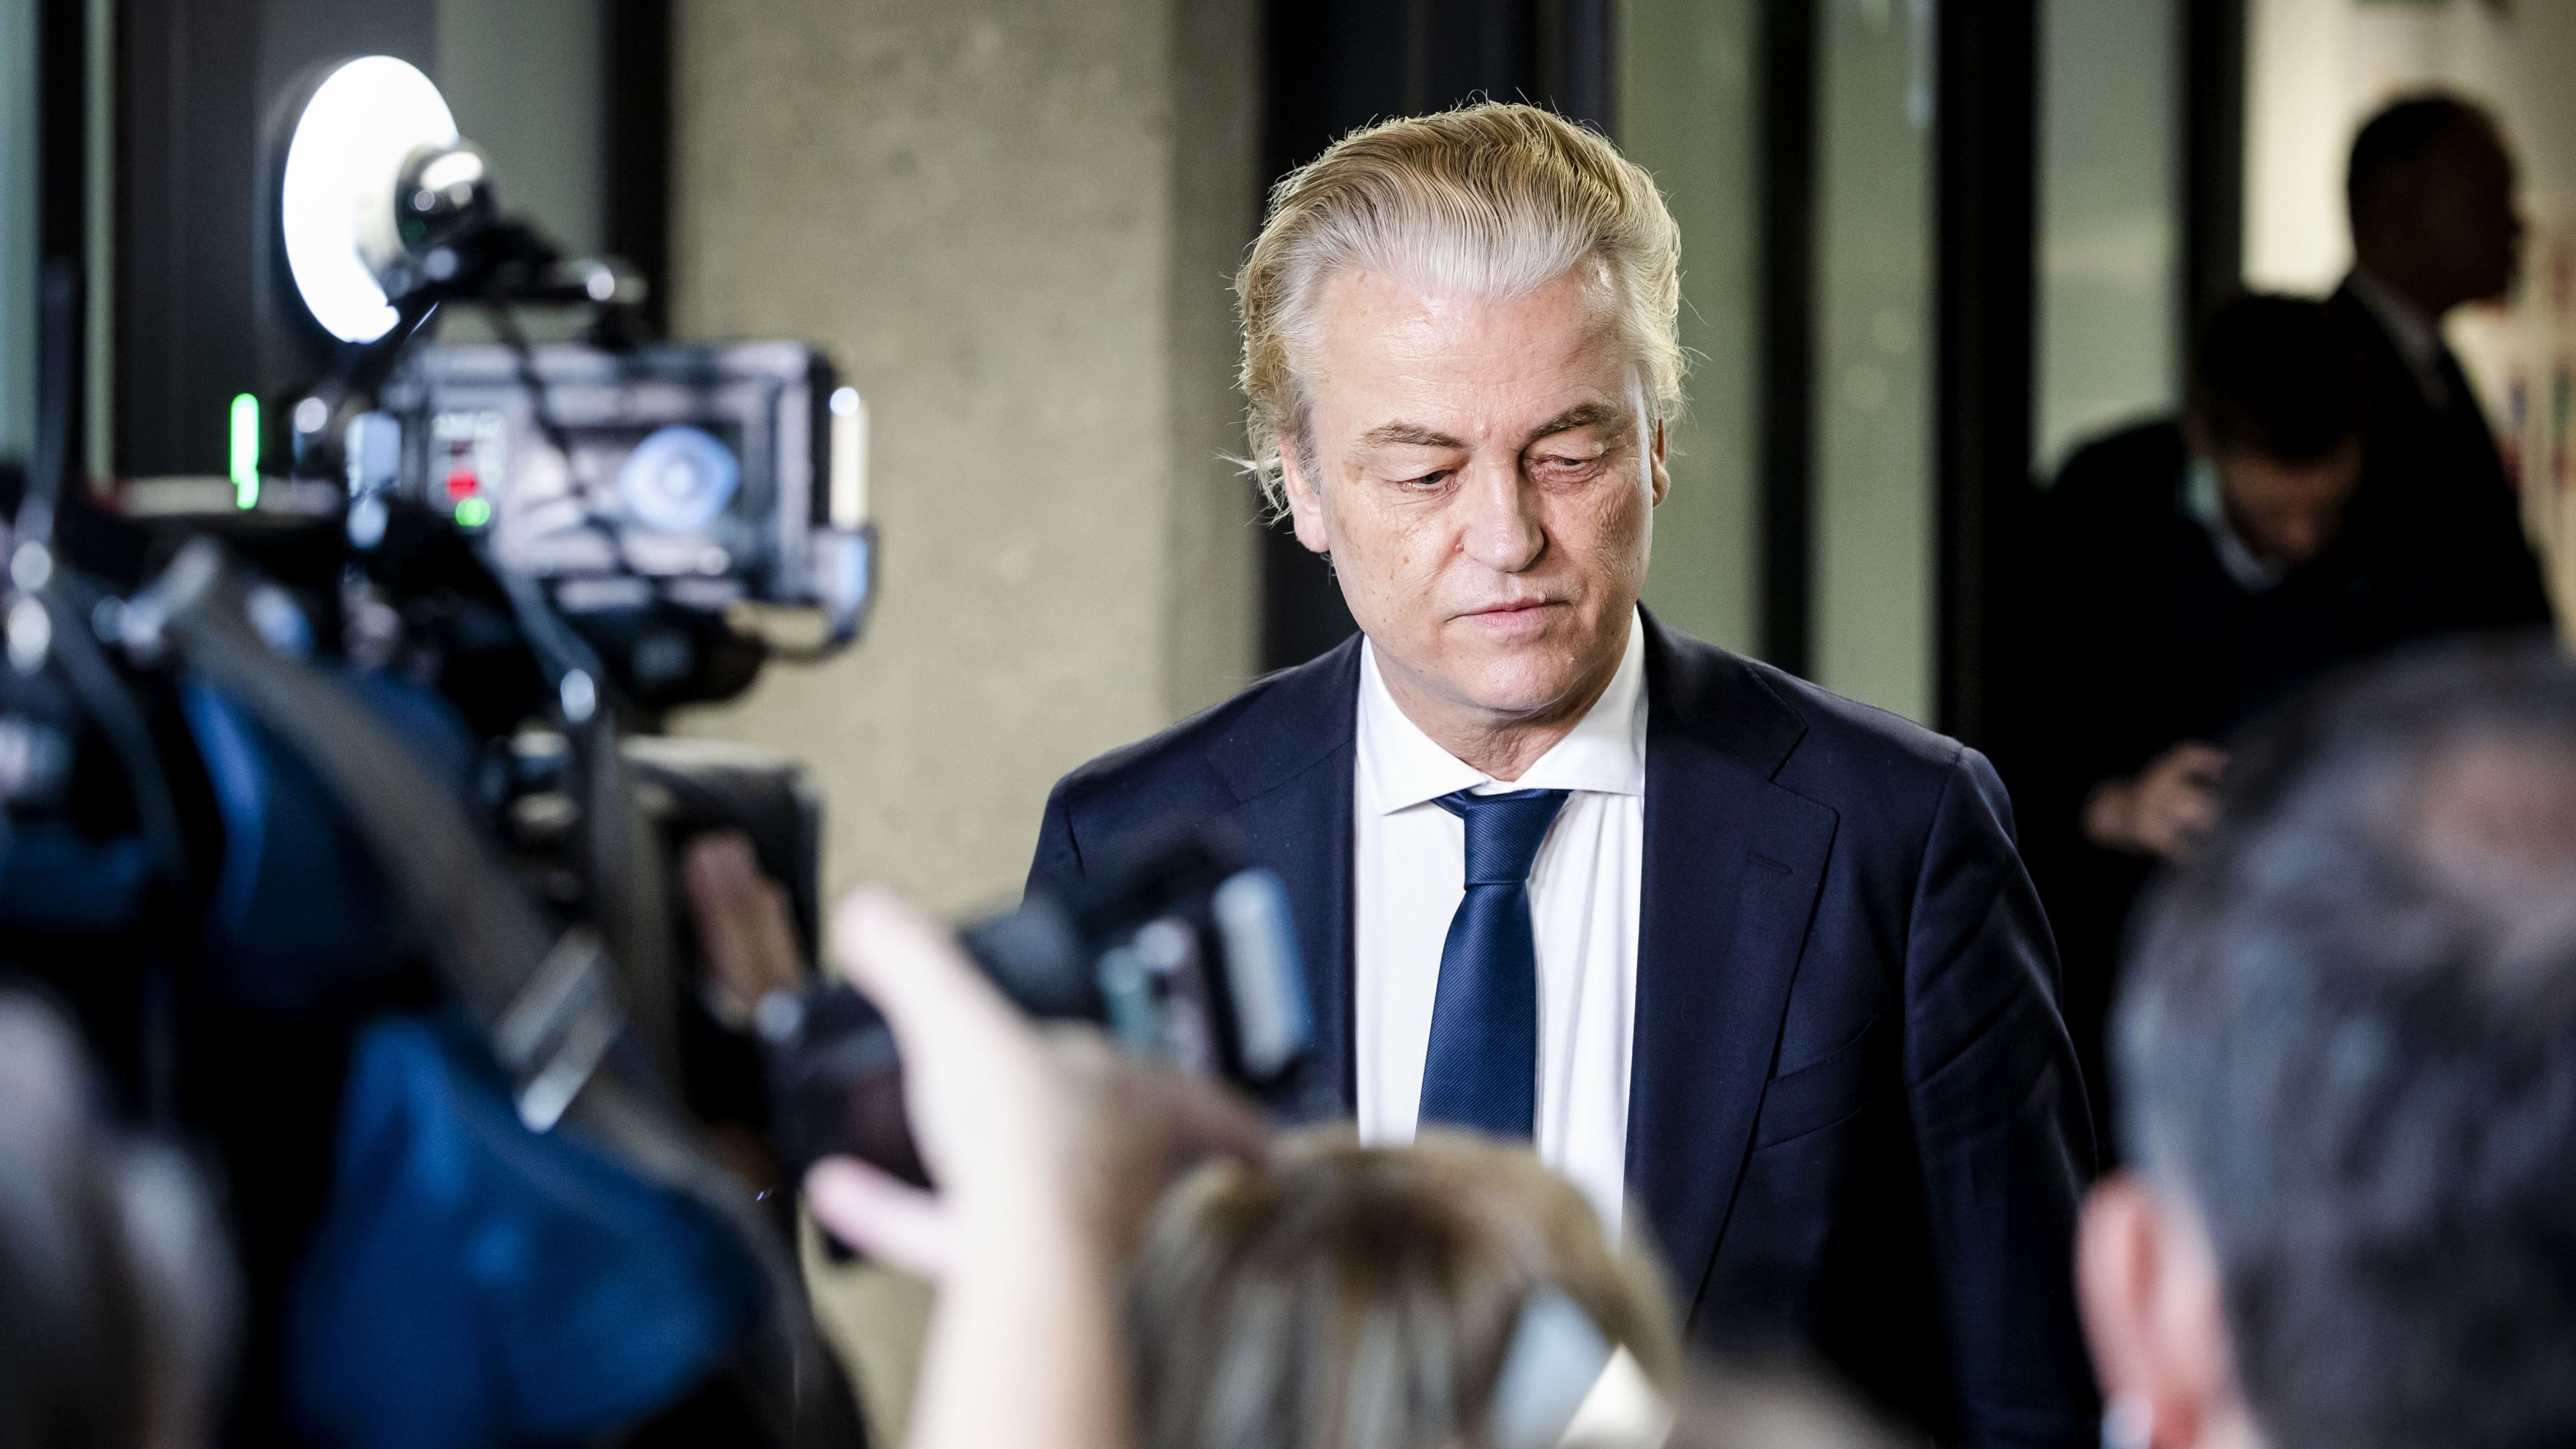 PVV-fractie stemt unaniem in met akkoord nieuw kabinet: 'Trots dat het gelukt is'